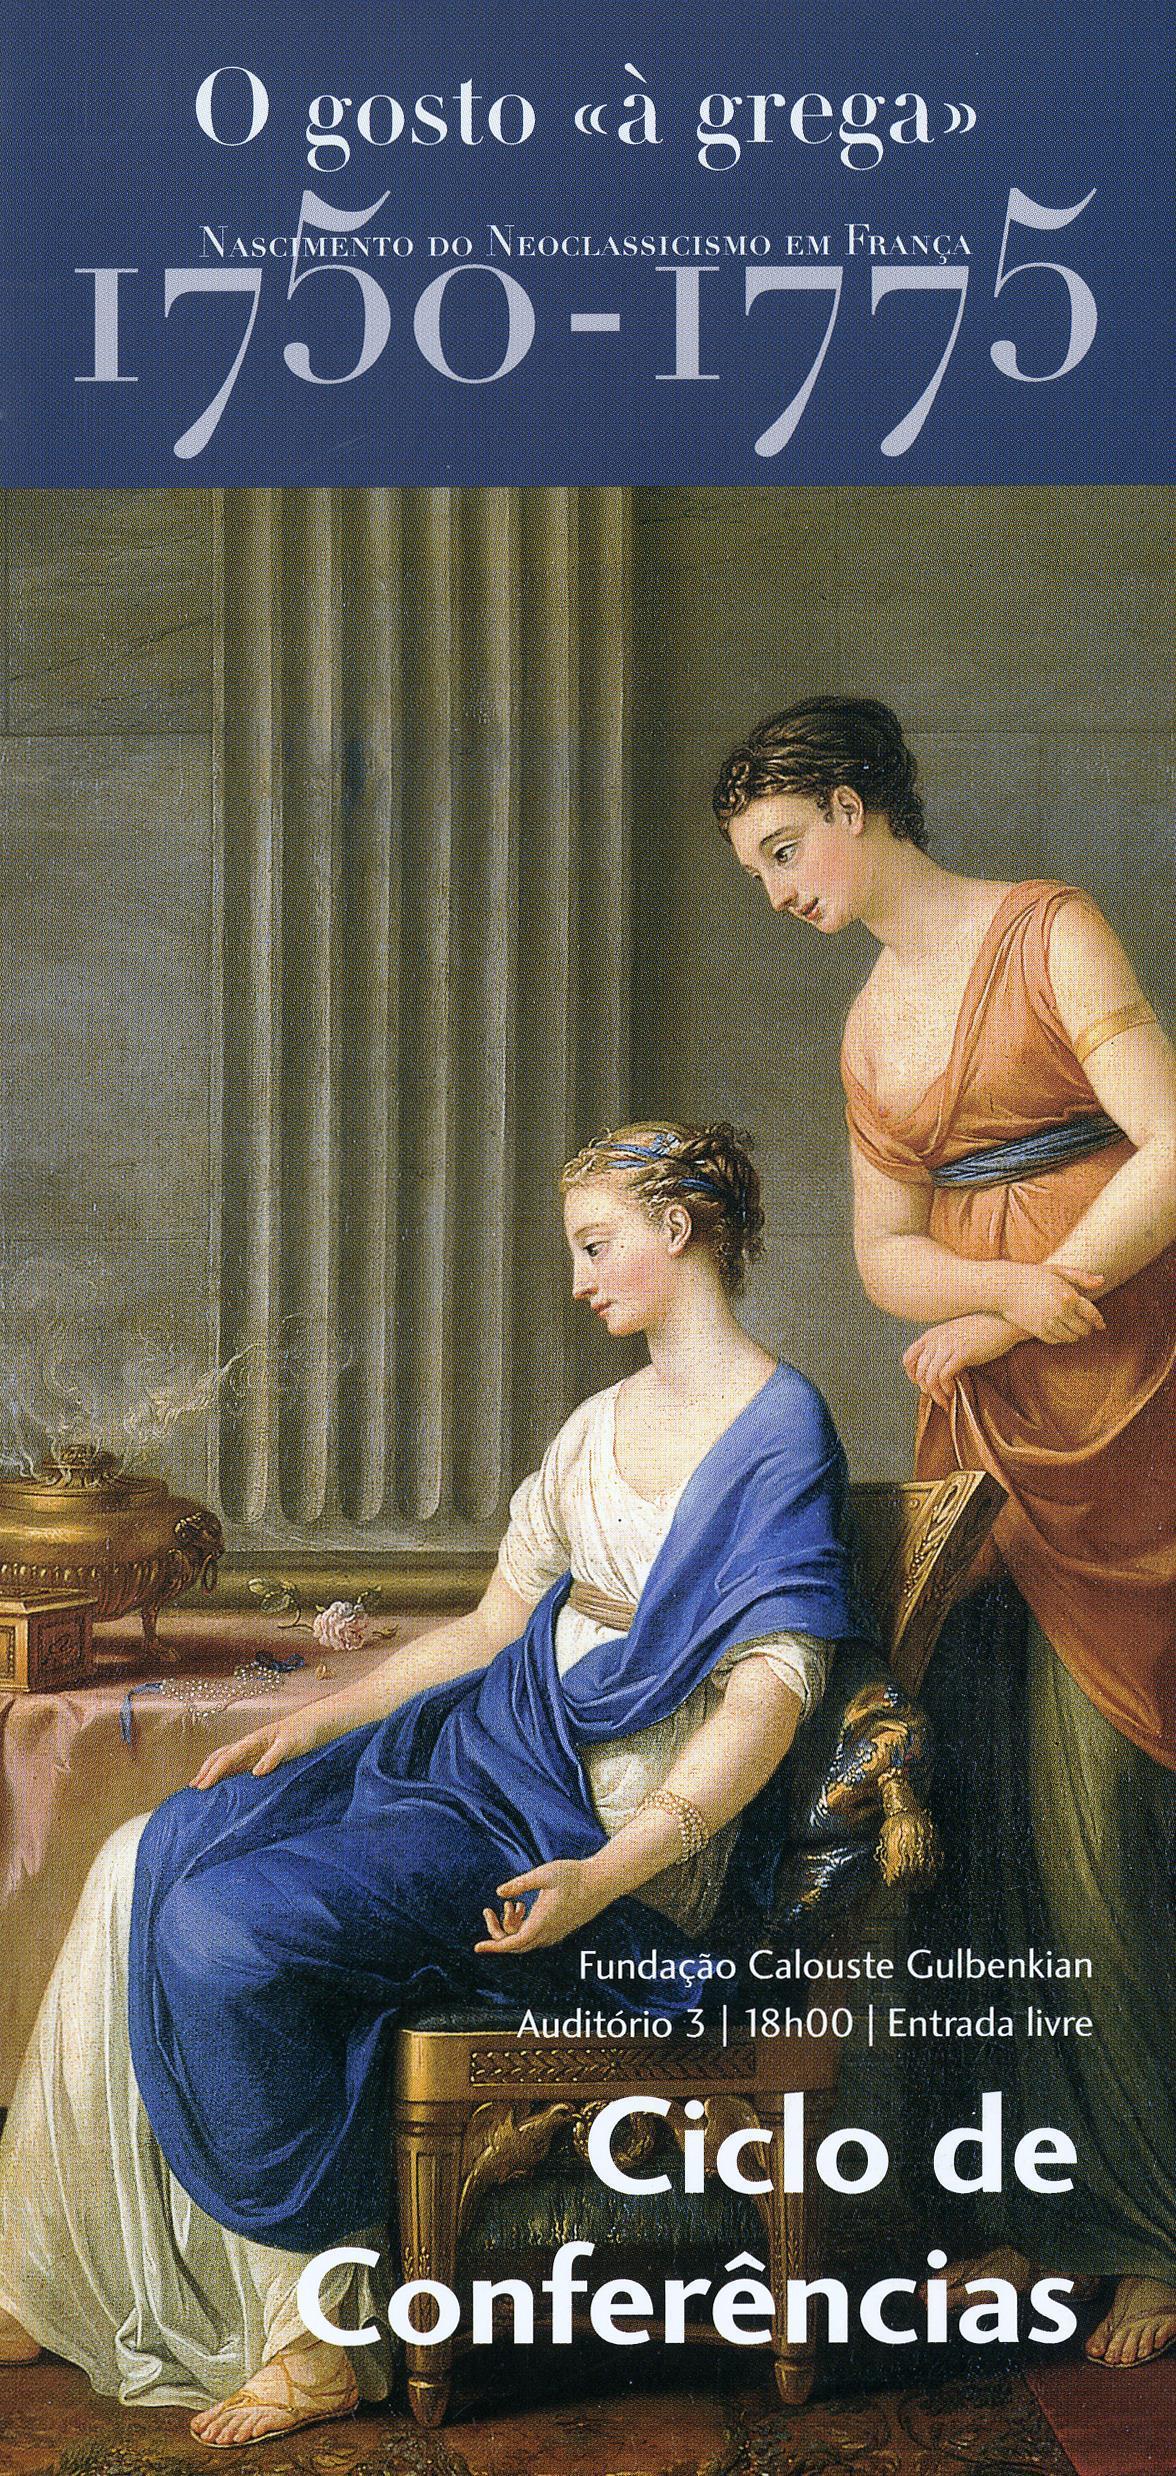 O Gosto «à Grega». Nascimento do Neoclassicismo em França, 1750 – 1775 [ciclo de conferências]